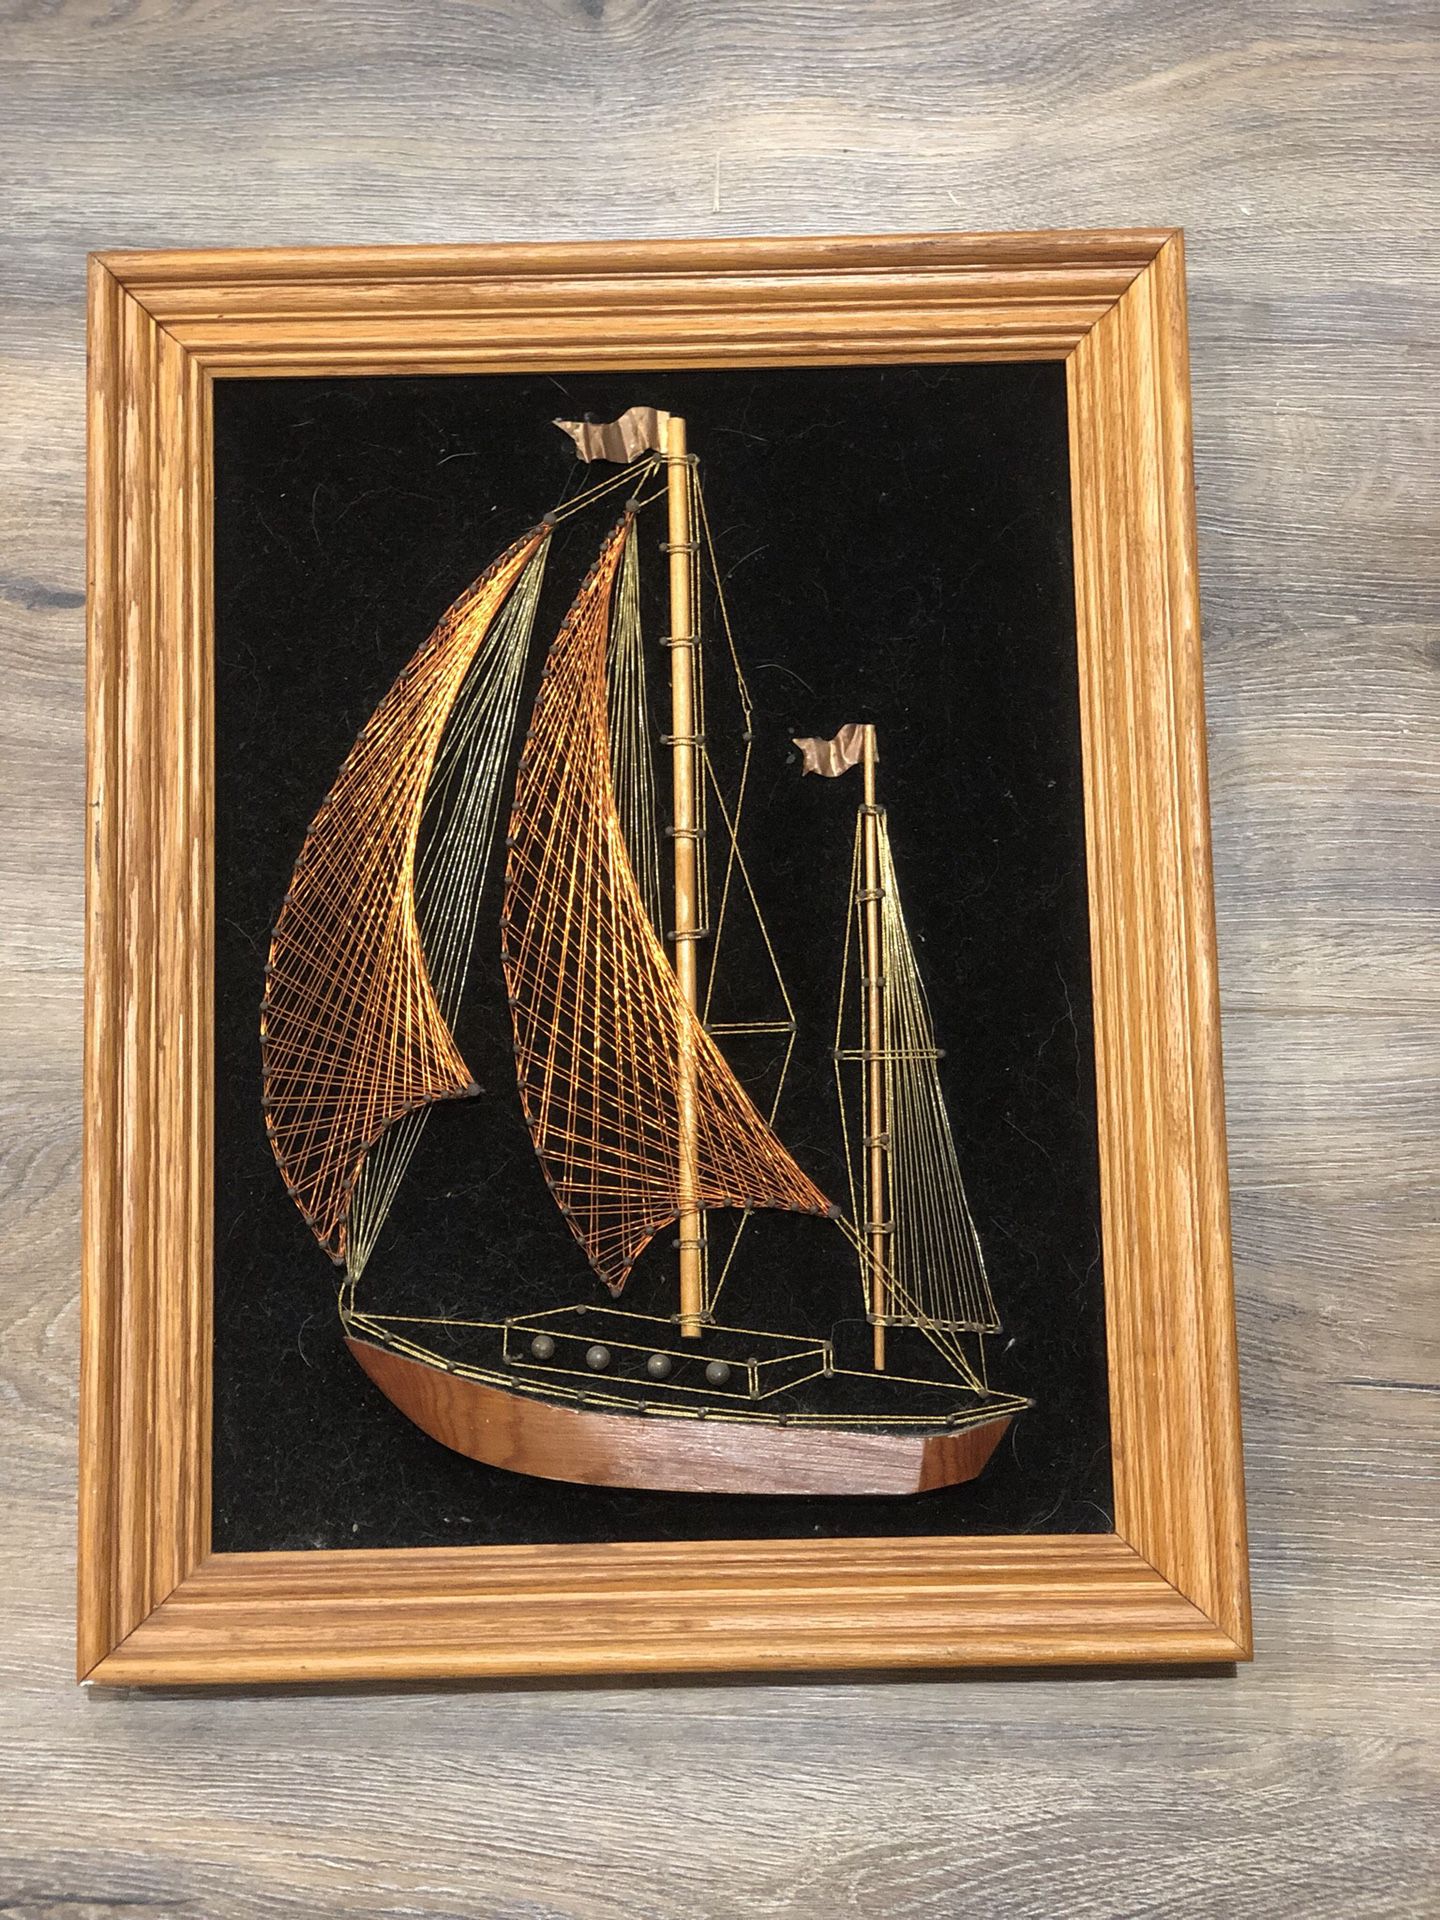 Copper woven sailboat